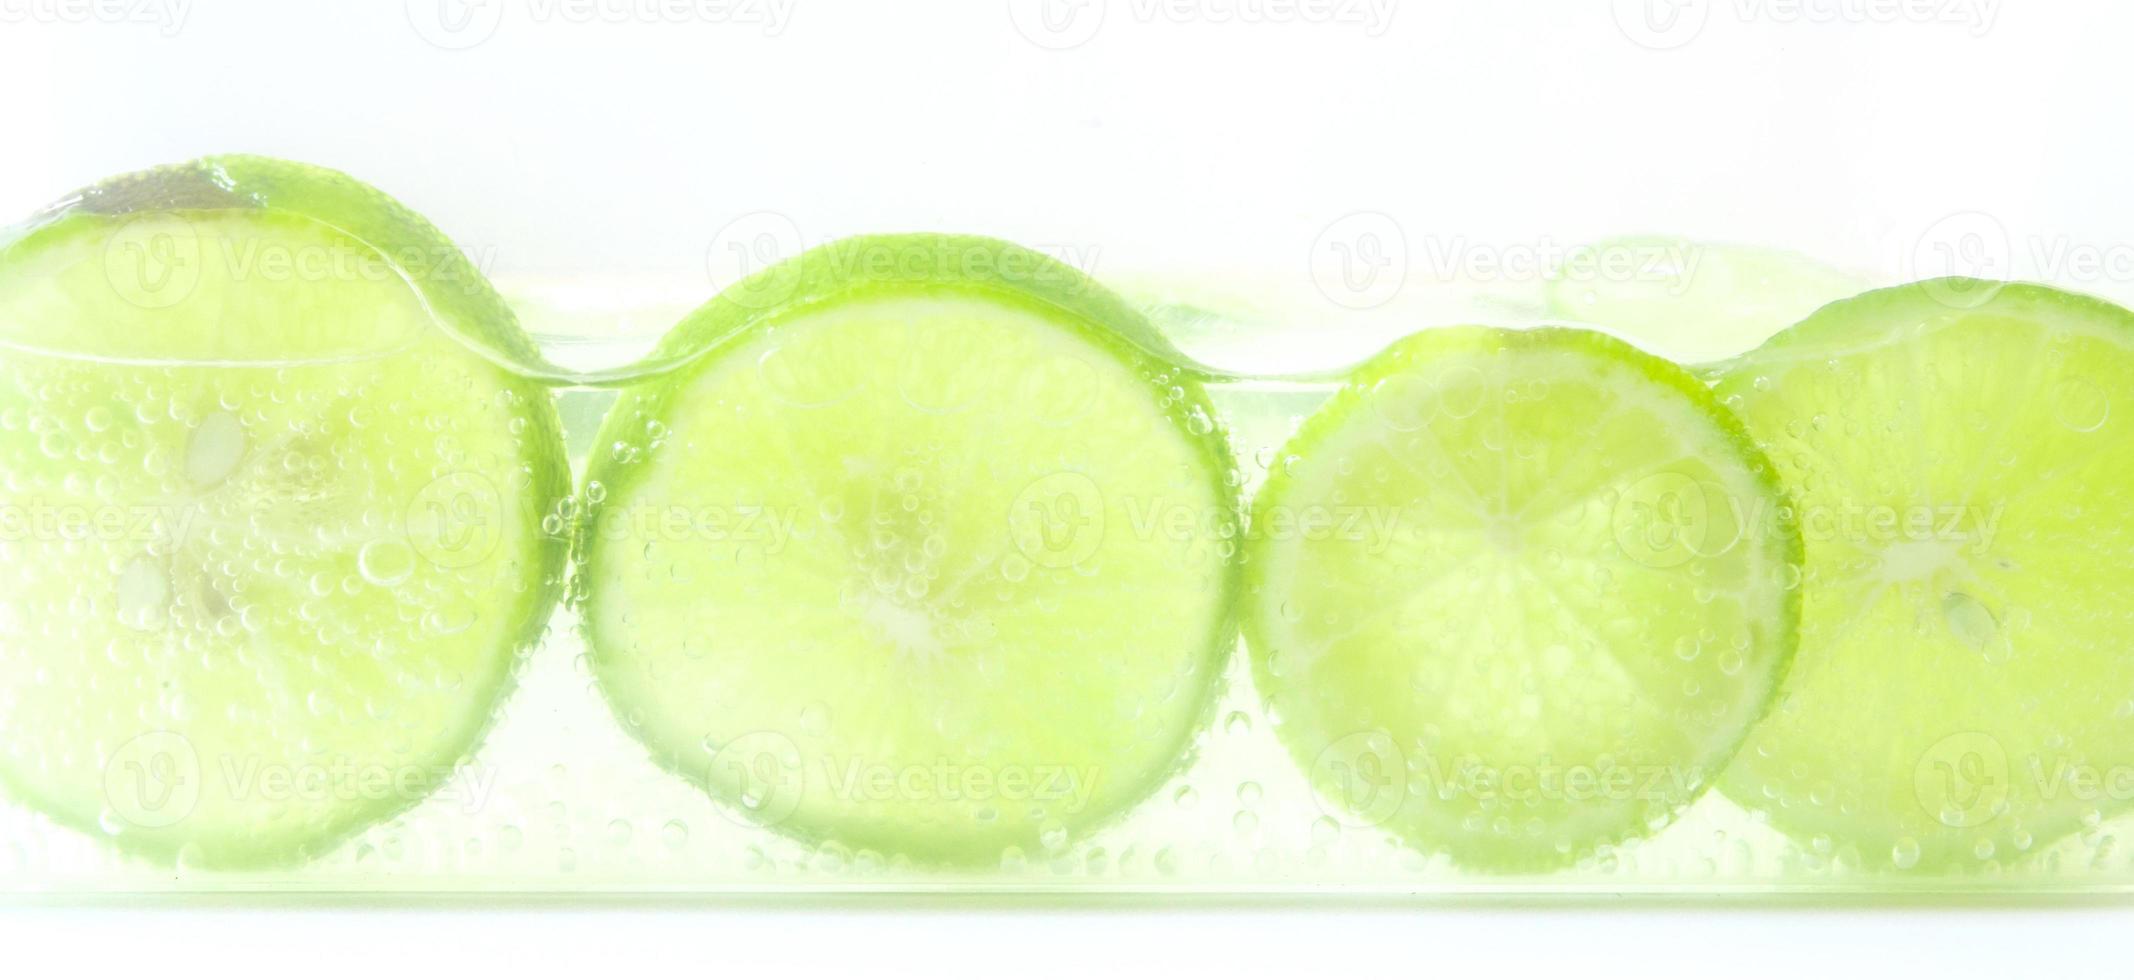 limão com bolhas isoladas no fundo branco foto